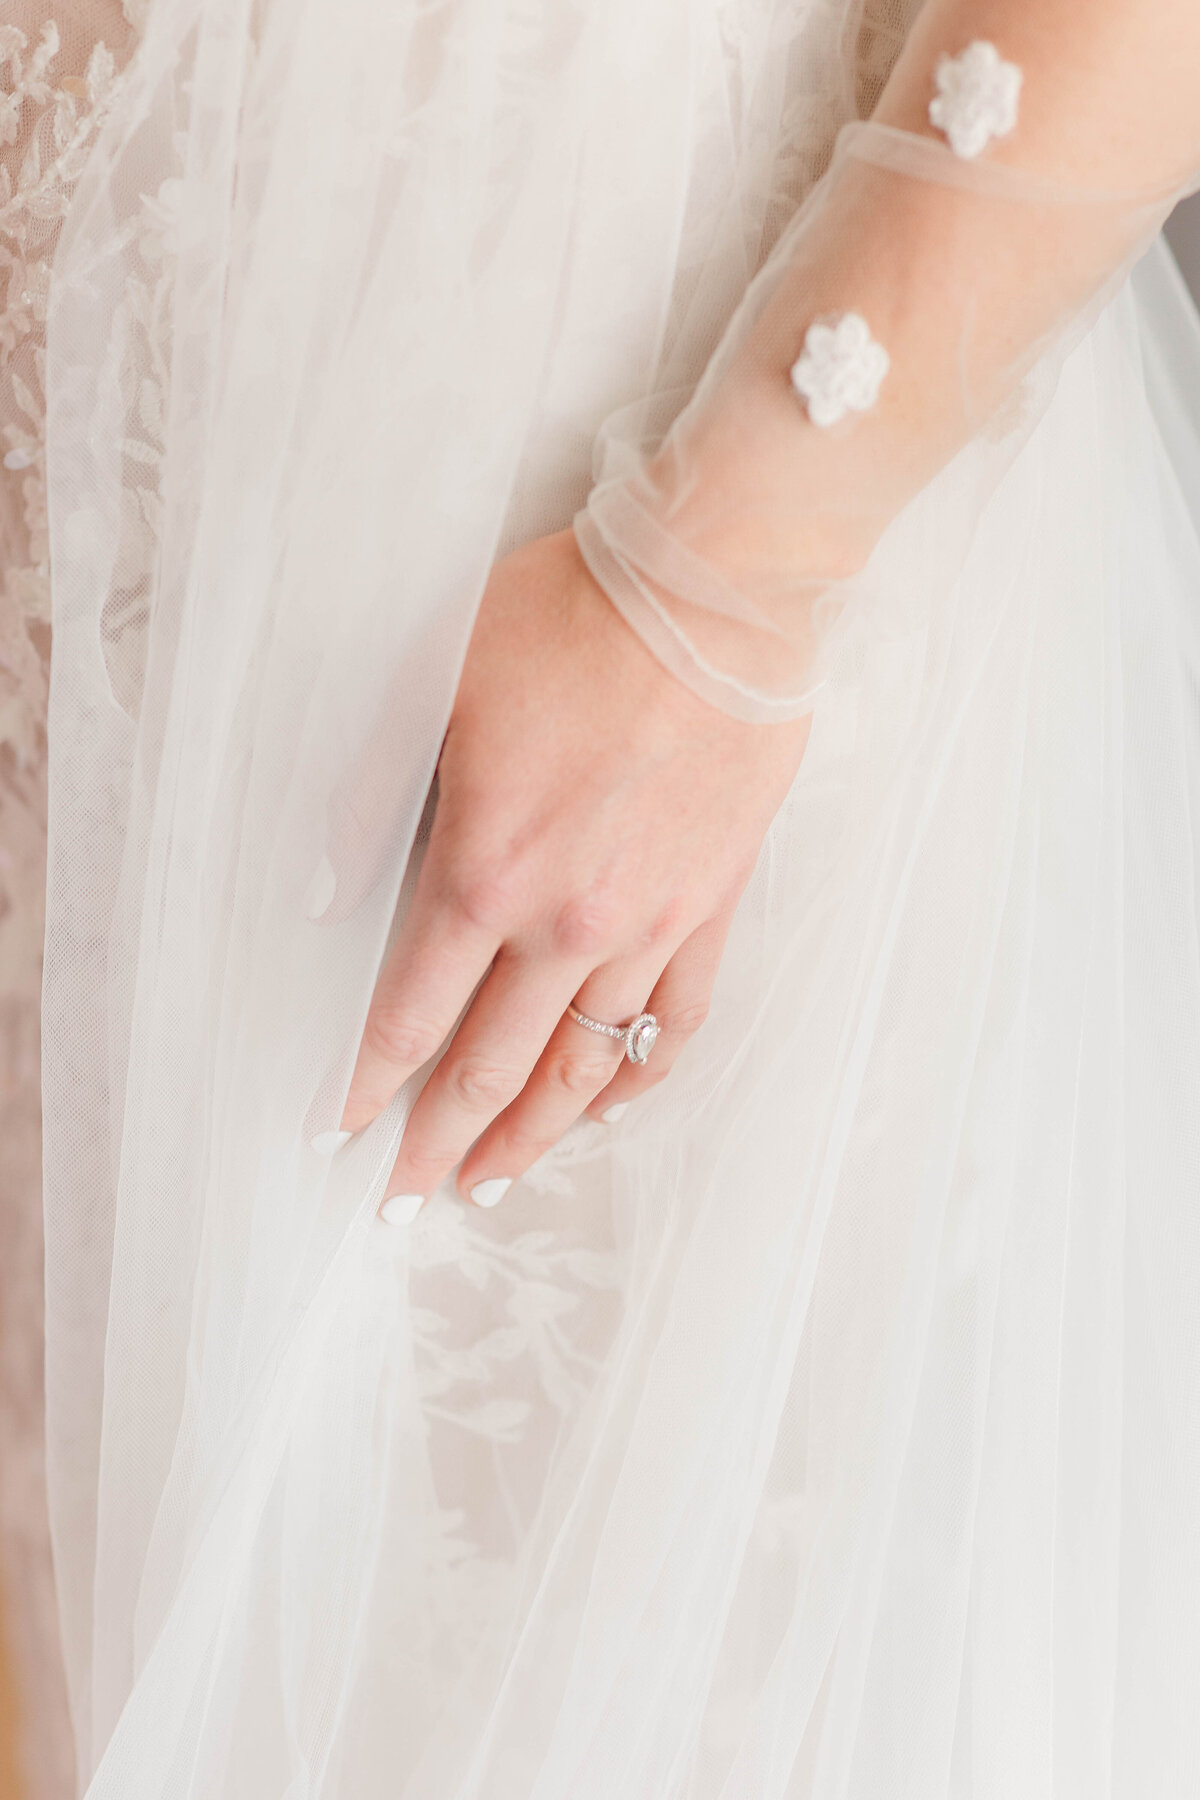 Nicolette & Curtis_Wedding_Bride In Dress--1003